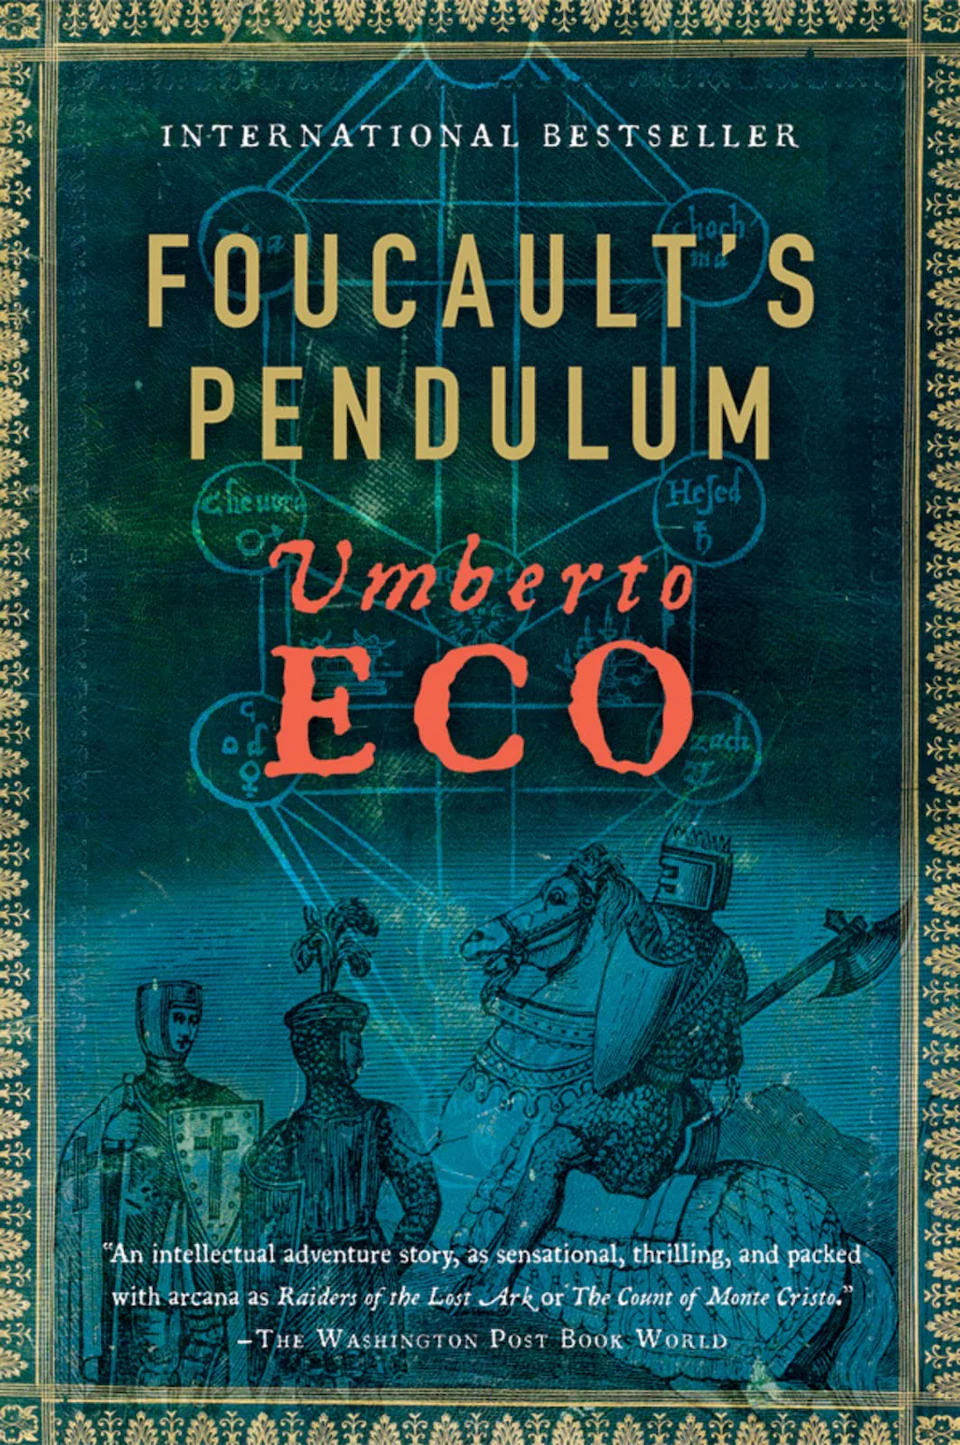 Foucault's Pendulum by Umberto Eco finished on 2022 Dec 13